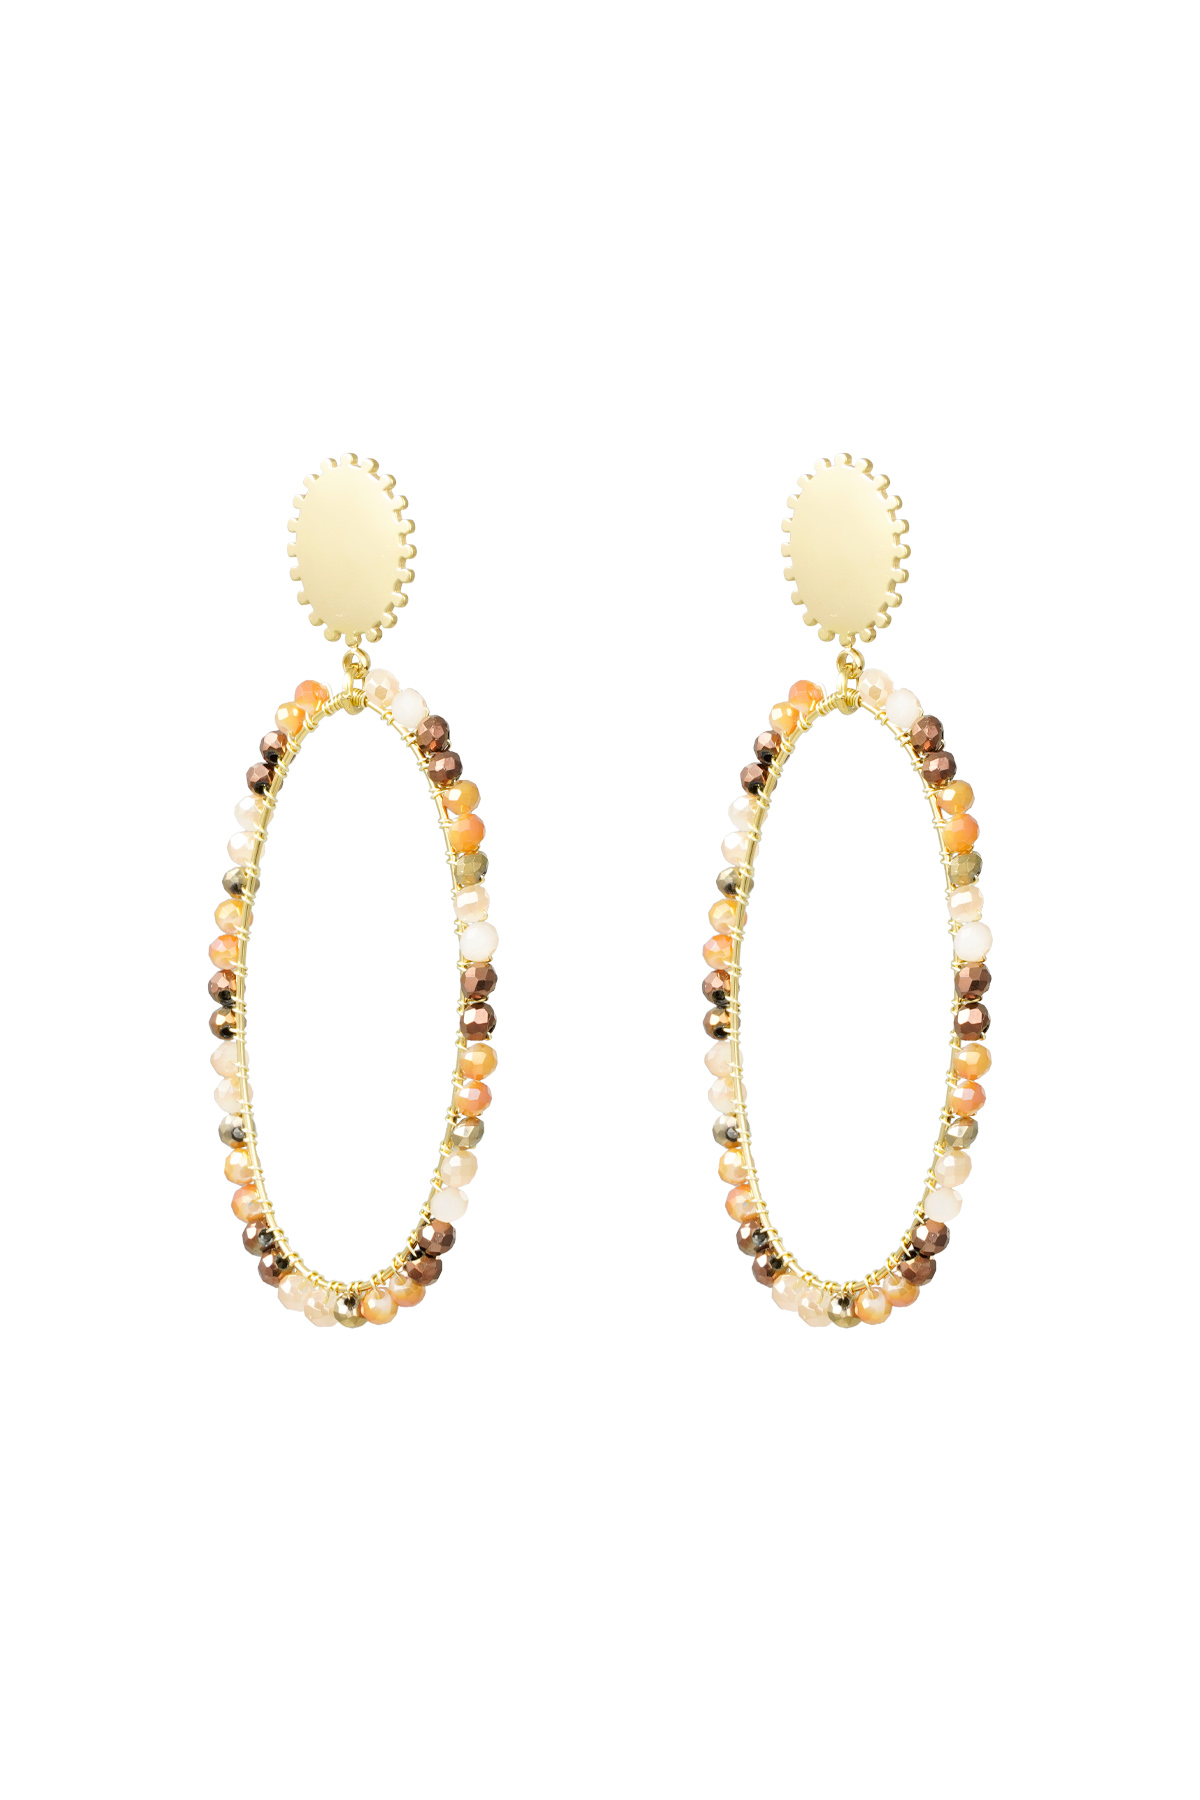 Längliche Ohrringe mit Perlen - Gold/Beige